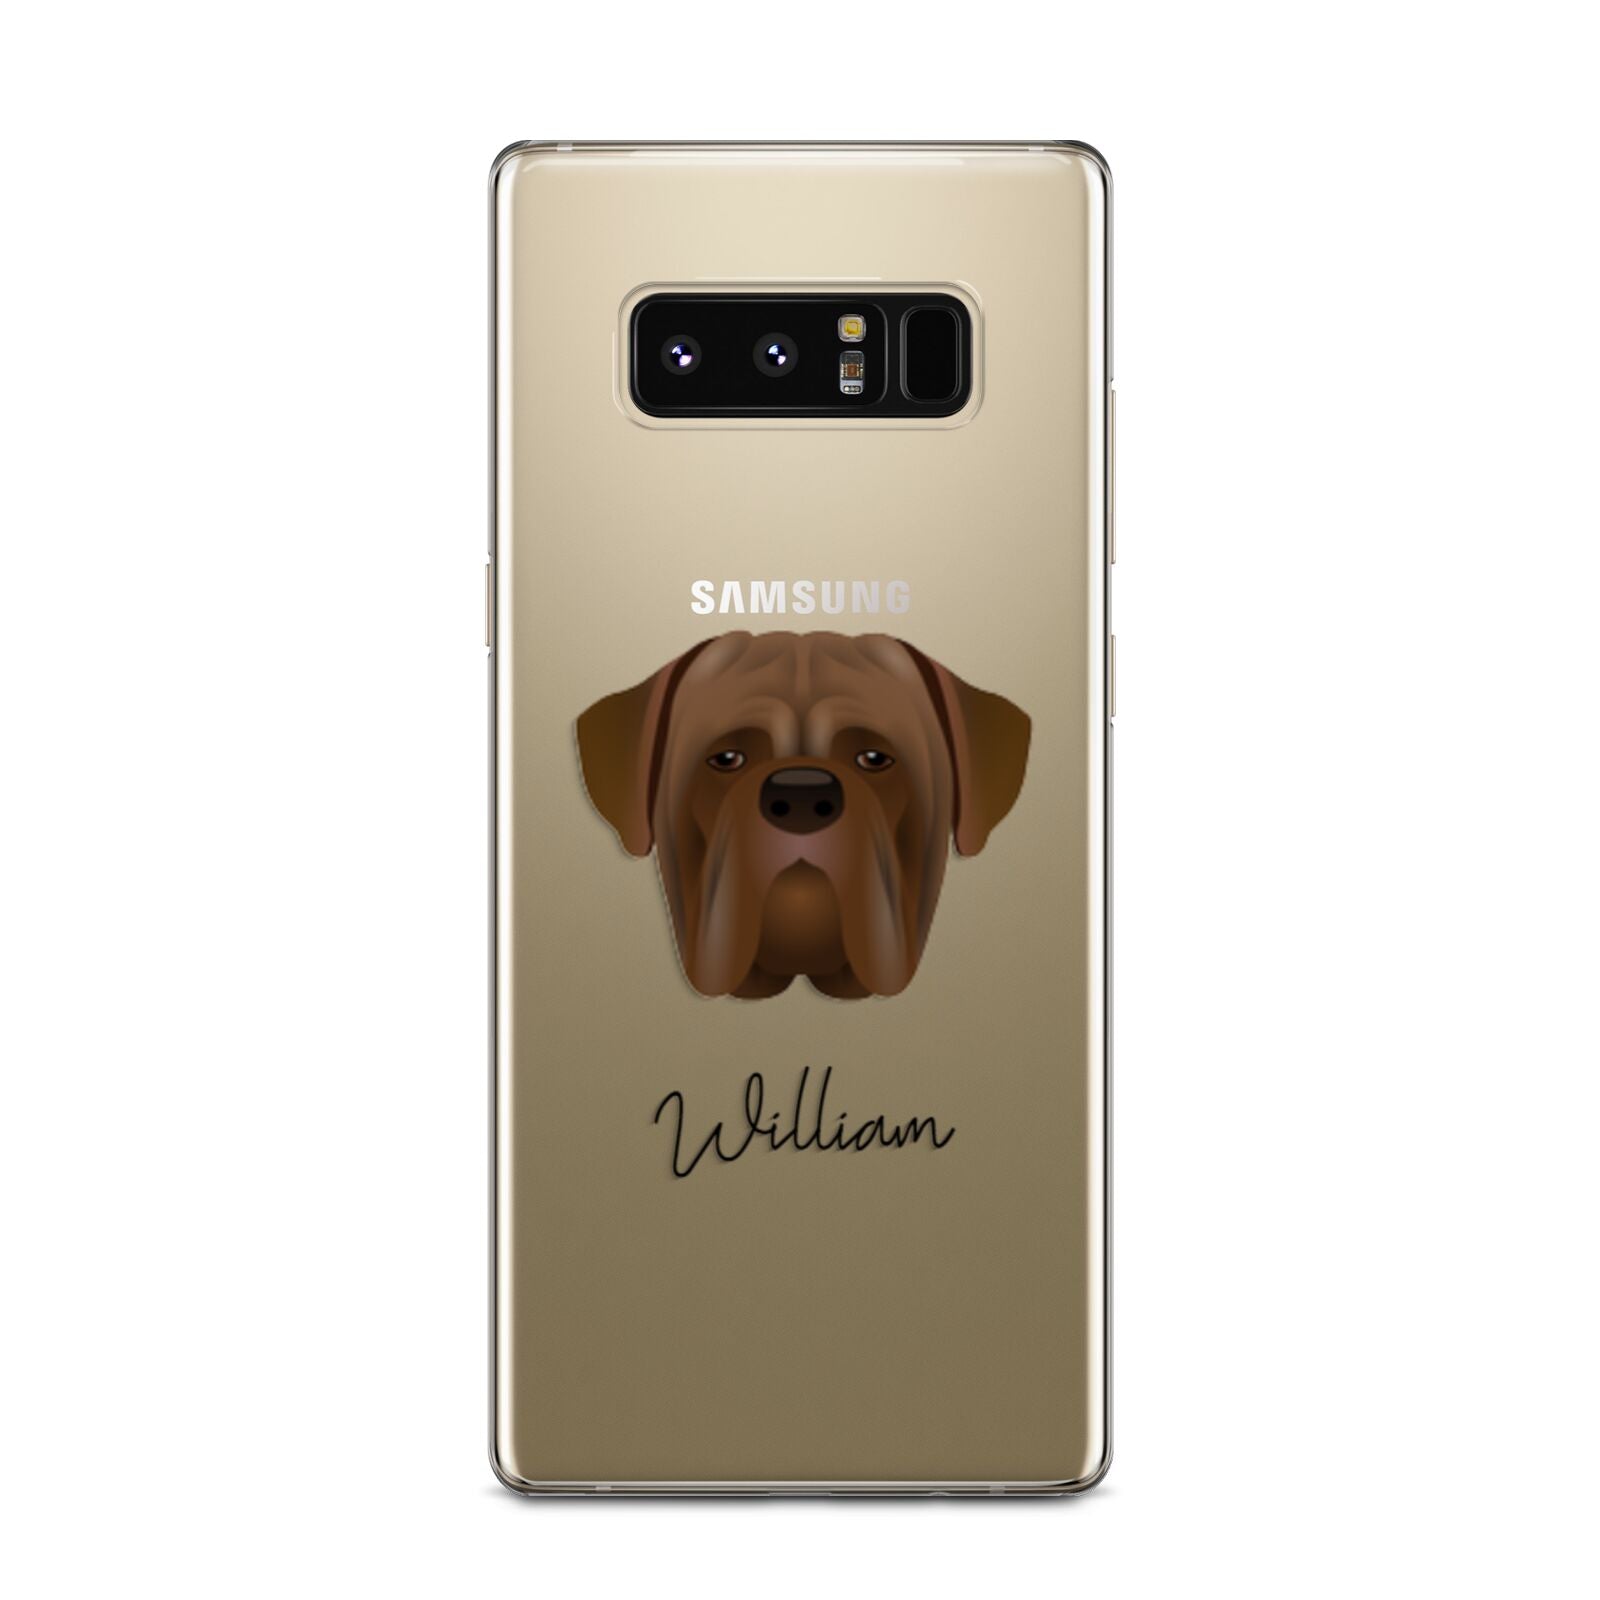 Dogue de Bordeaux Personalised Samsung Galaxy Note 8 Case